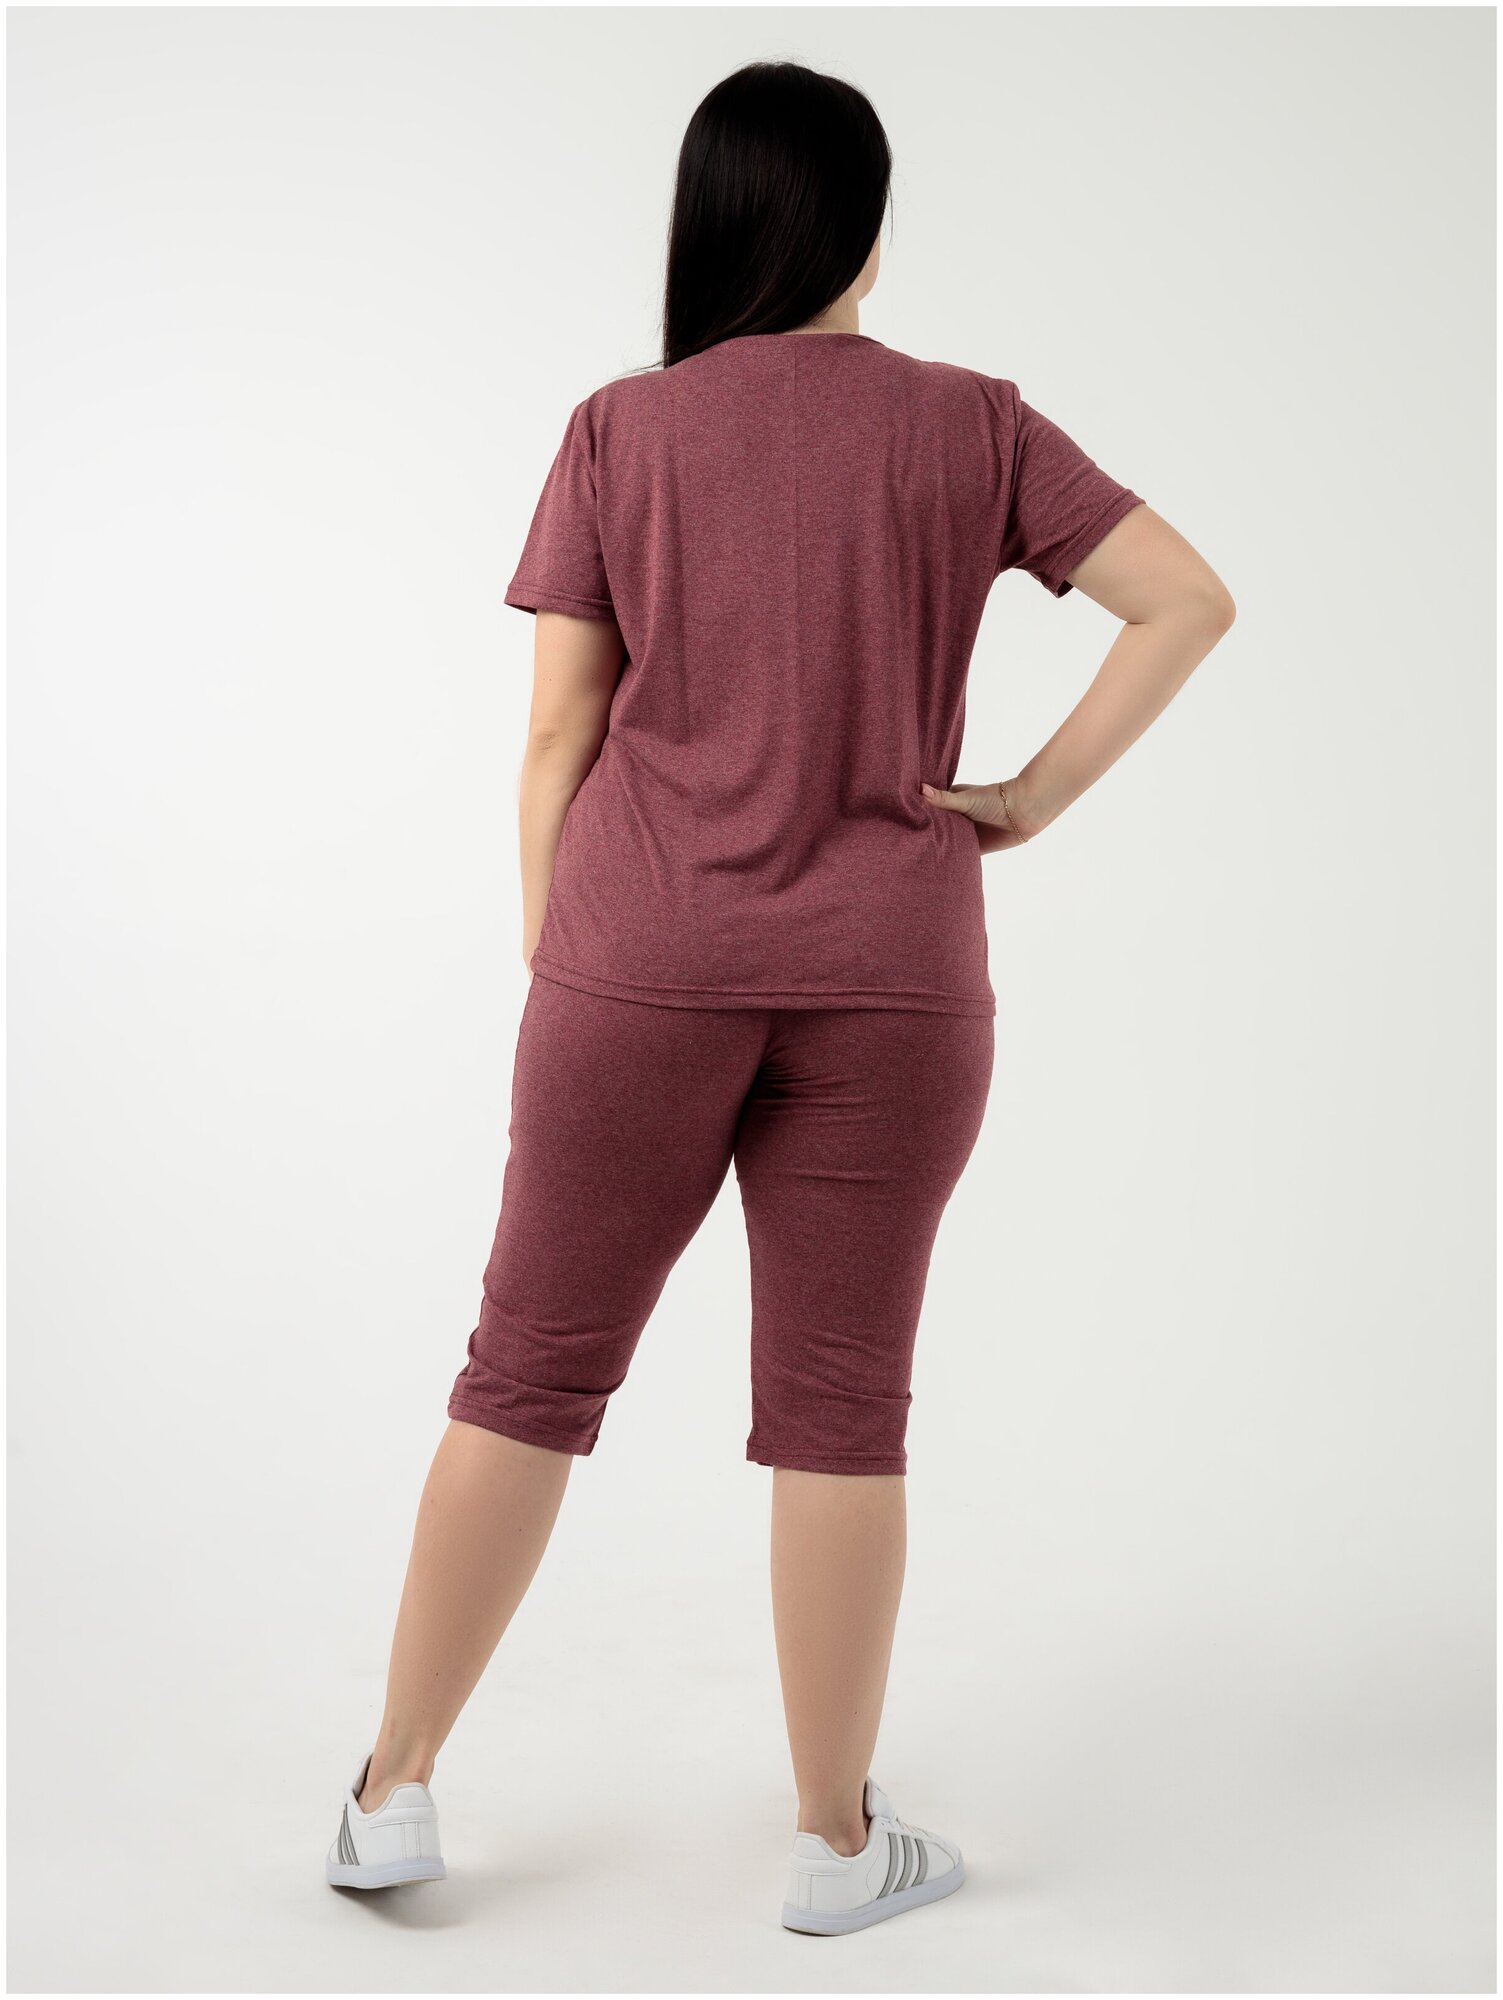 Комплект Rozara, бриджи, футболка, короткий рукав, трикотажная, размер 56, красный, бордовый - фотография № 3